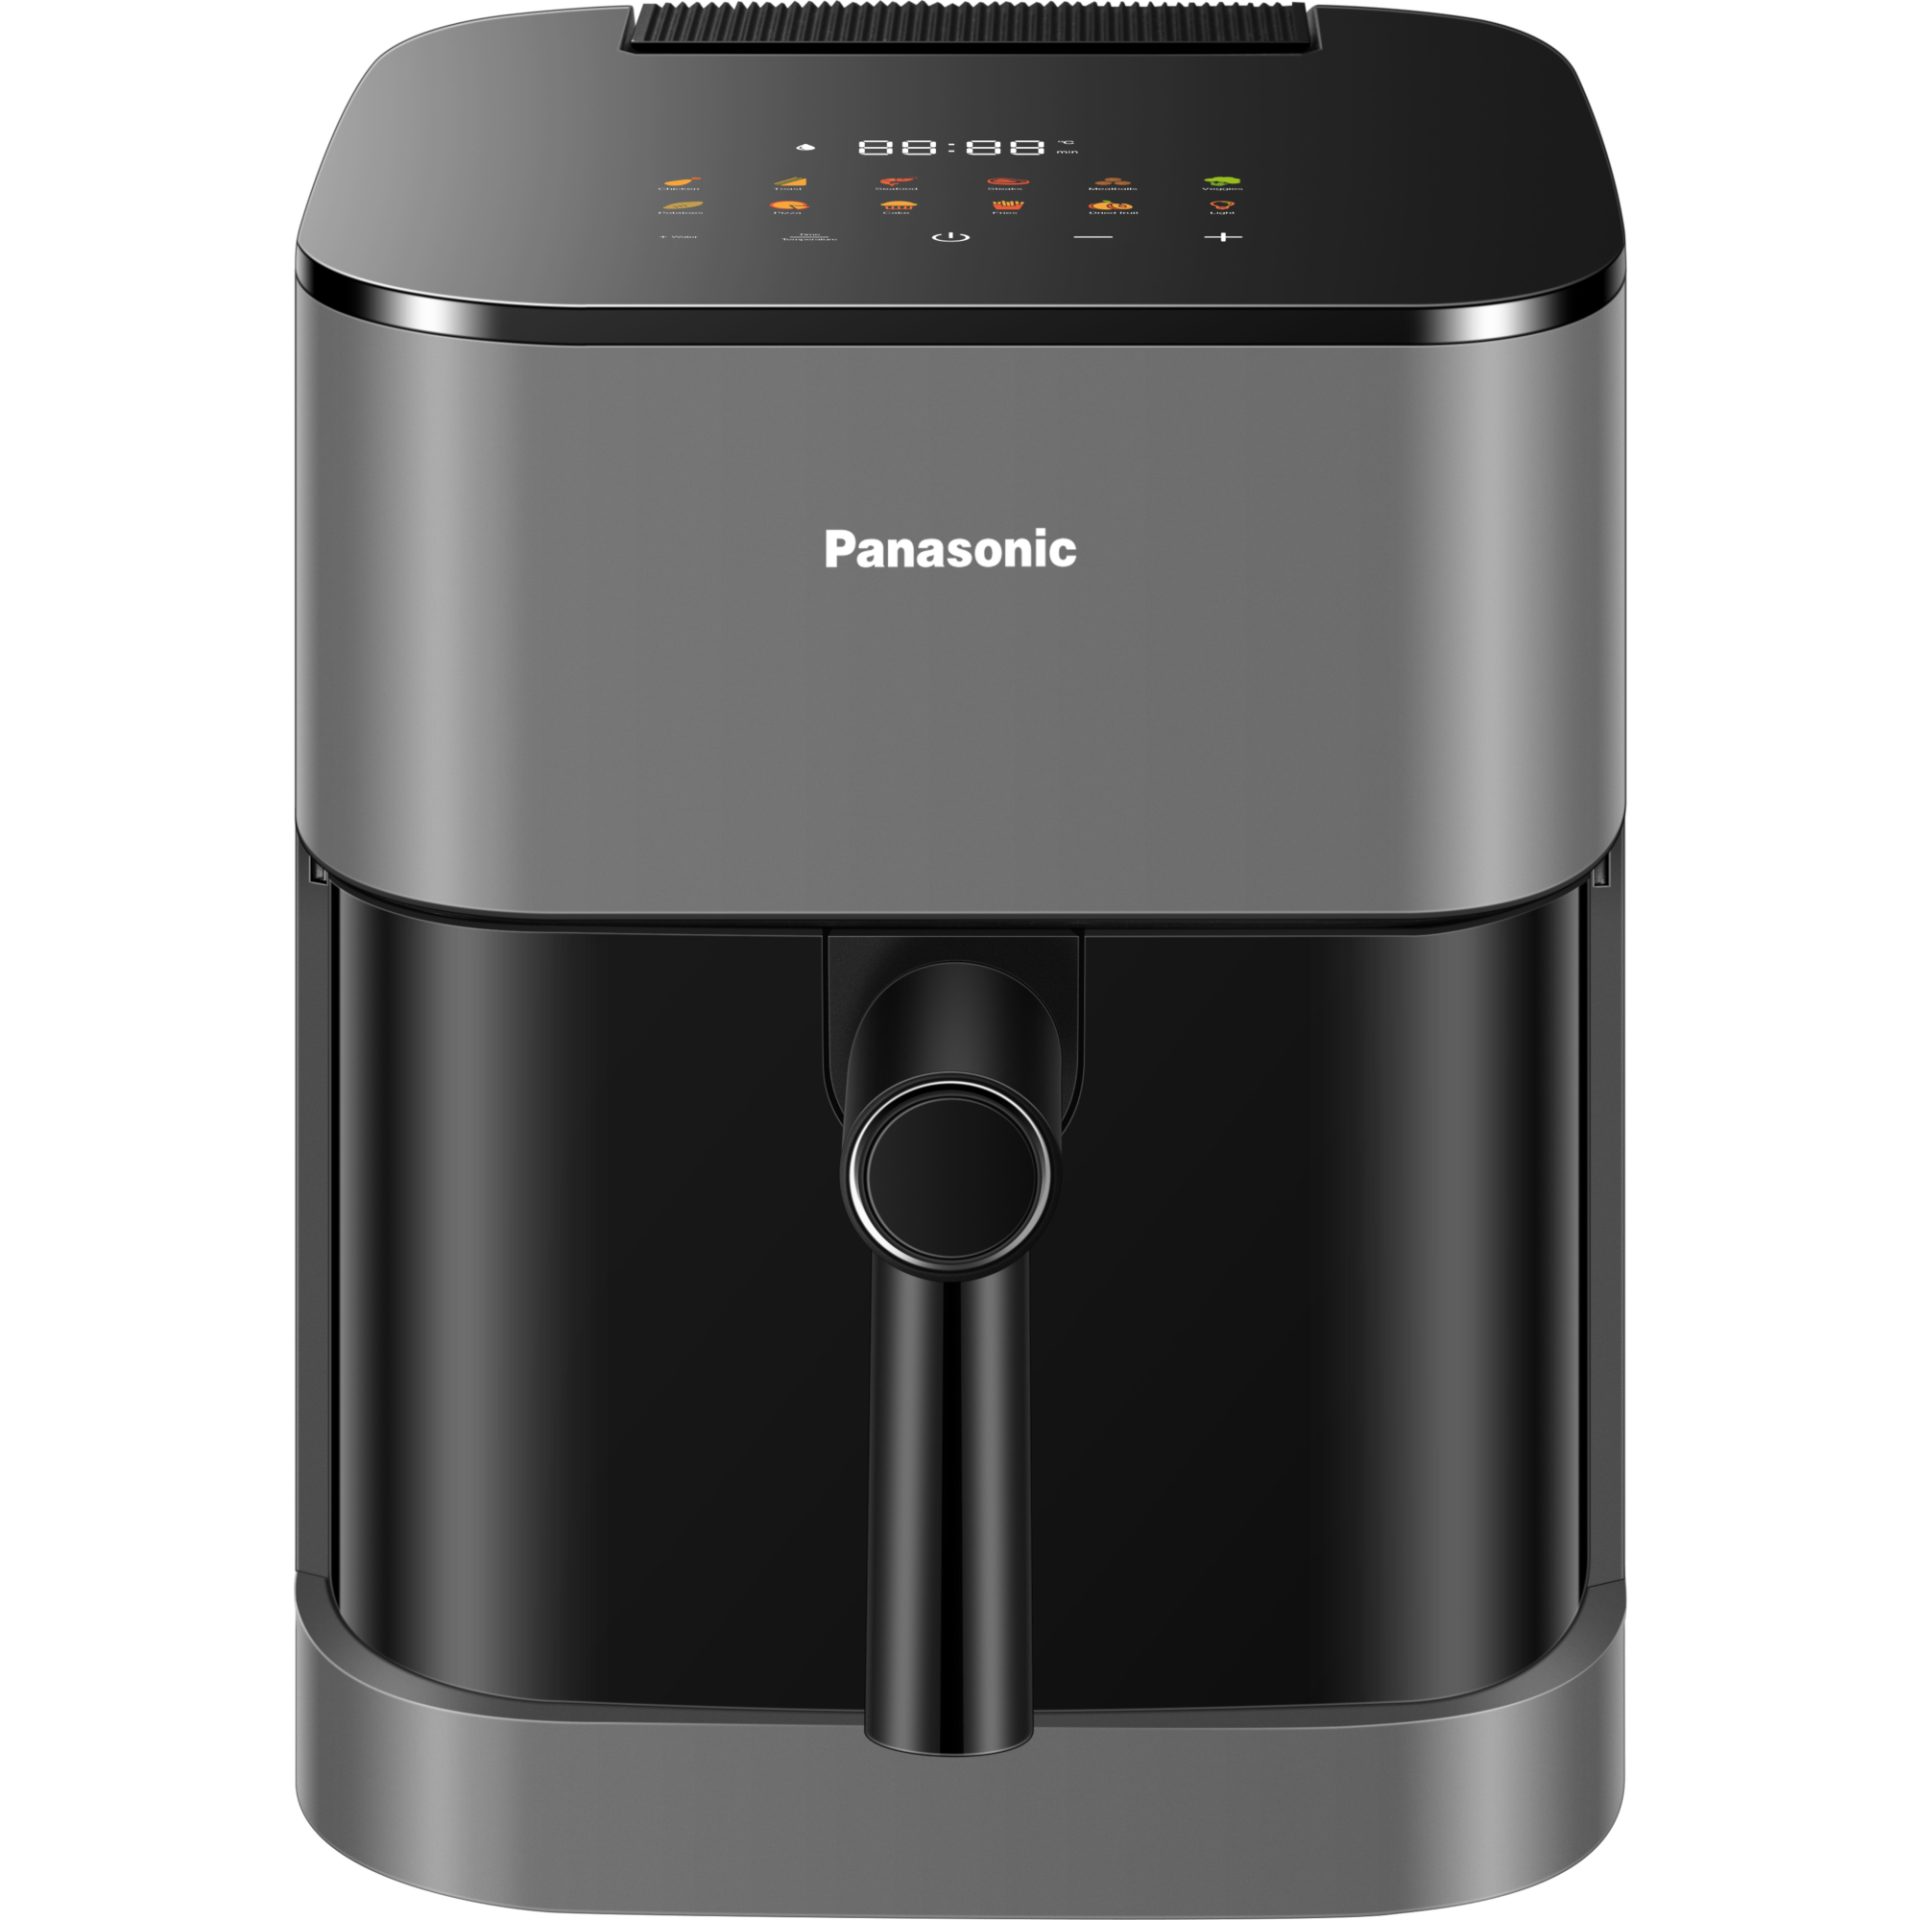 Panasonic NF-CC500 horkovzdušná fritéza bez tuku 1450W, 5l (skleněný průzor s osvětlením, jemná pára, LCD displej, dotykové ovládání)